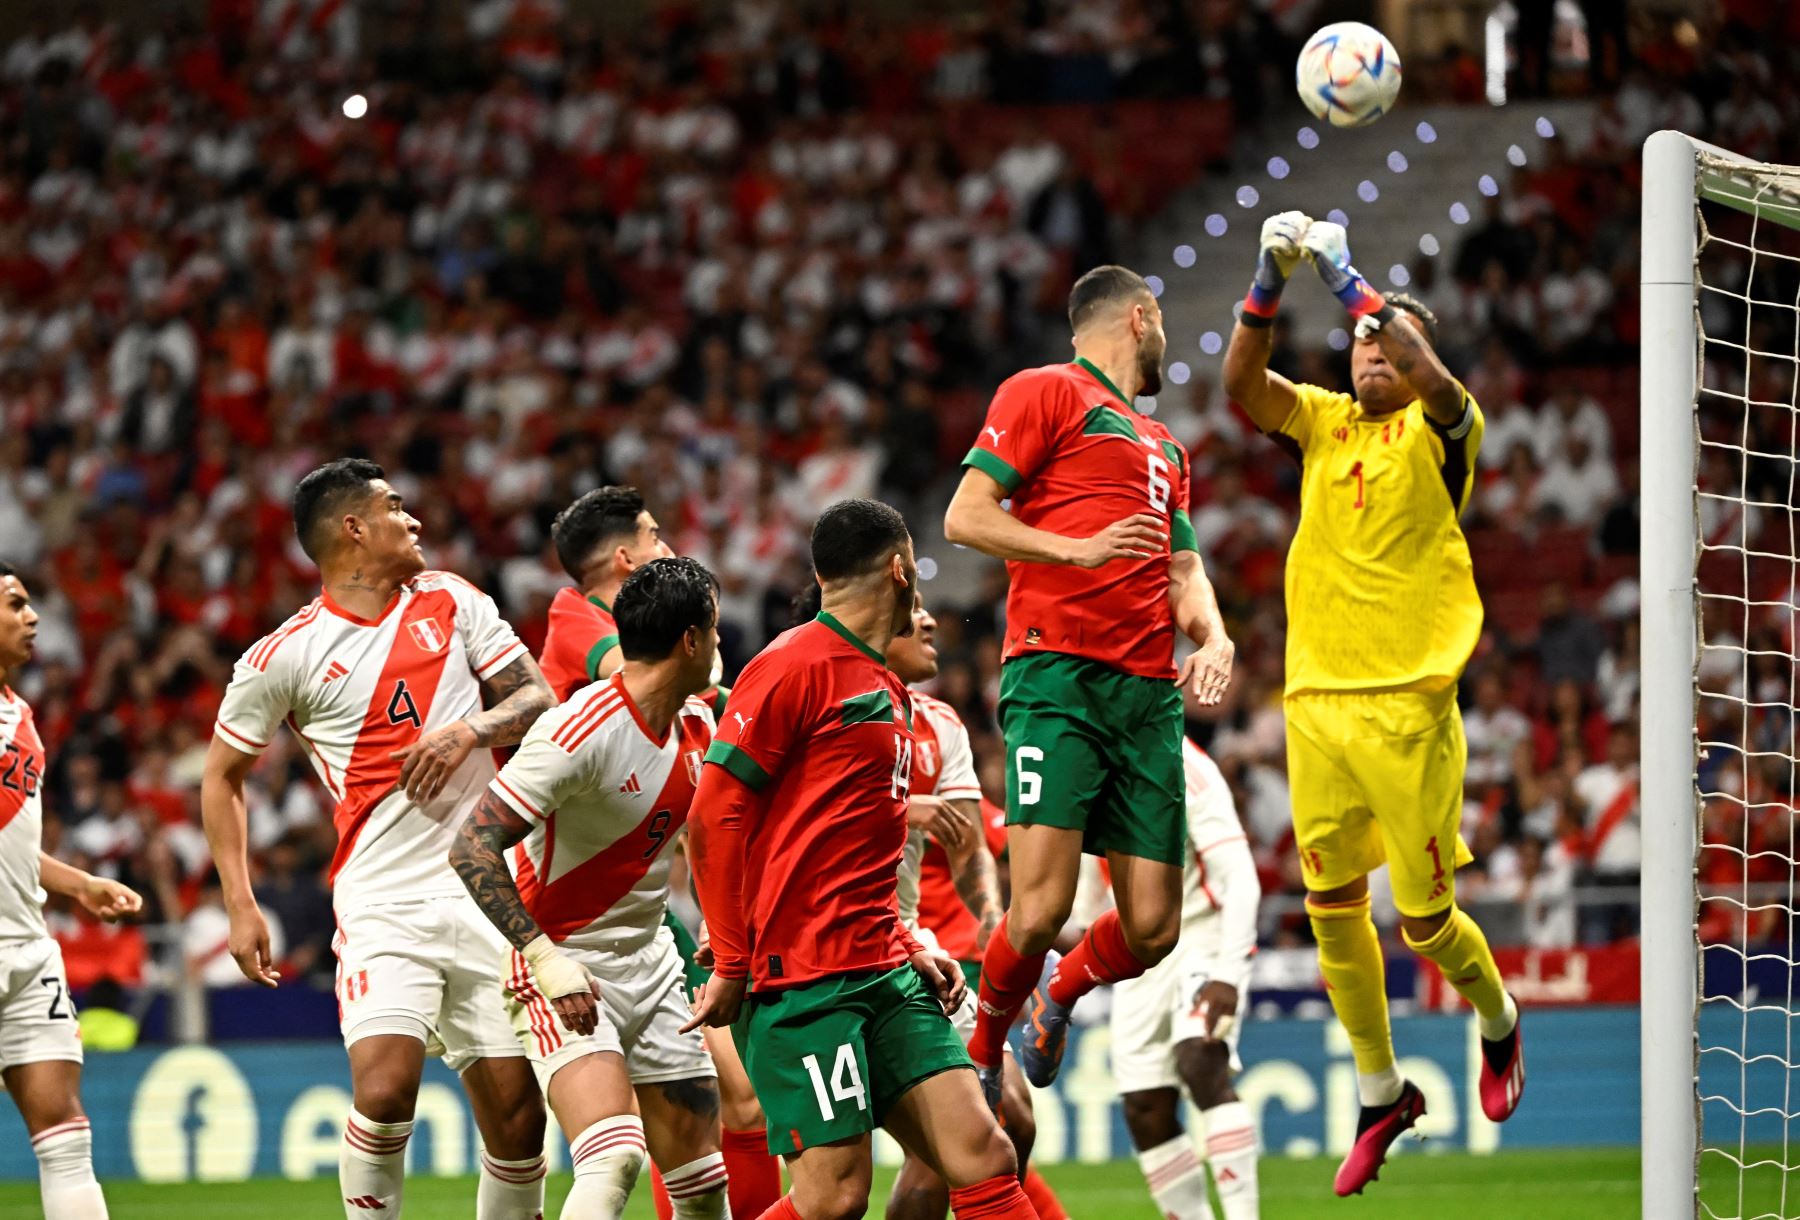 El portero de Perú, Pedro Gallese, desvía un balón durante el partido amistoso de fútbol entre Marruecos y Perú en el estadio Wanda Metropolitano de Madrid el 28 de marzo de 2023.
Foto: AFP